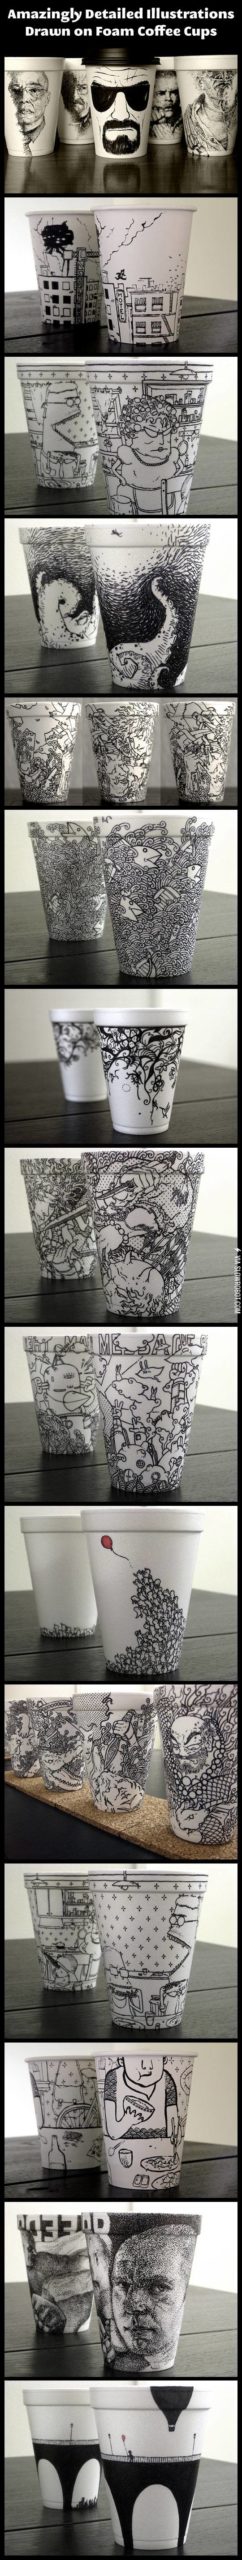 Foam+cup+art.